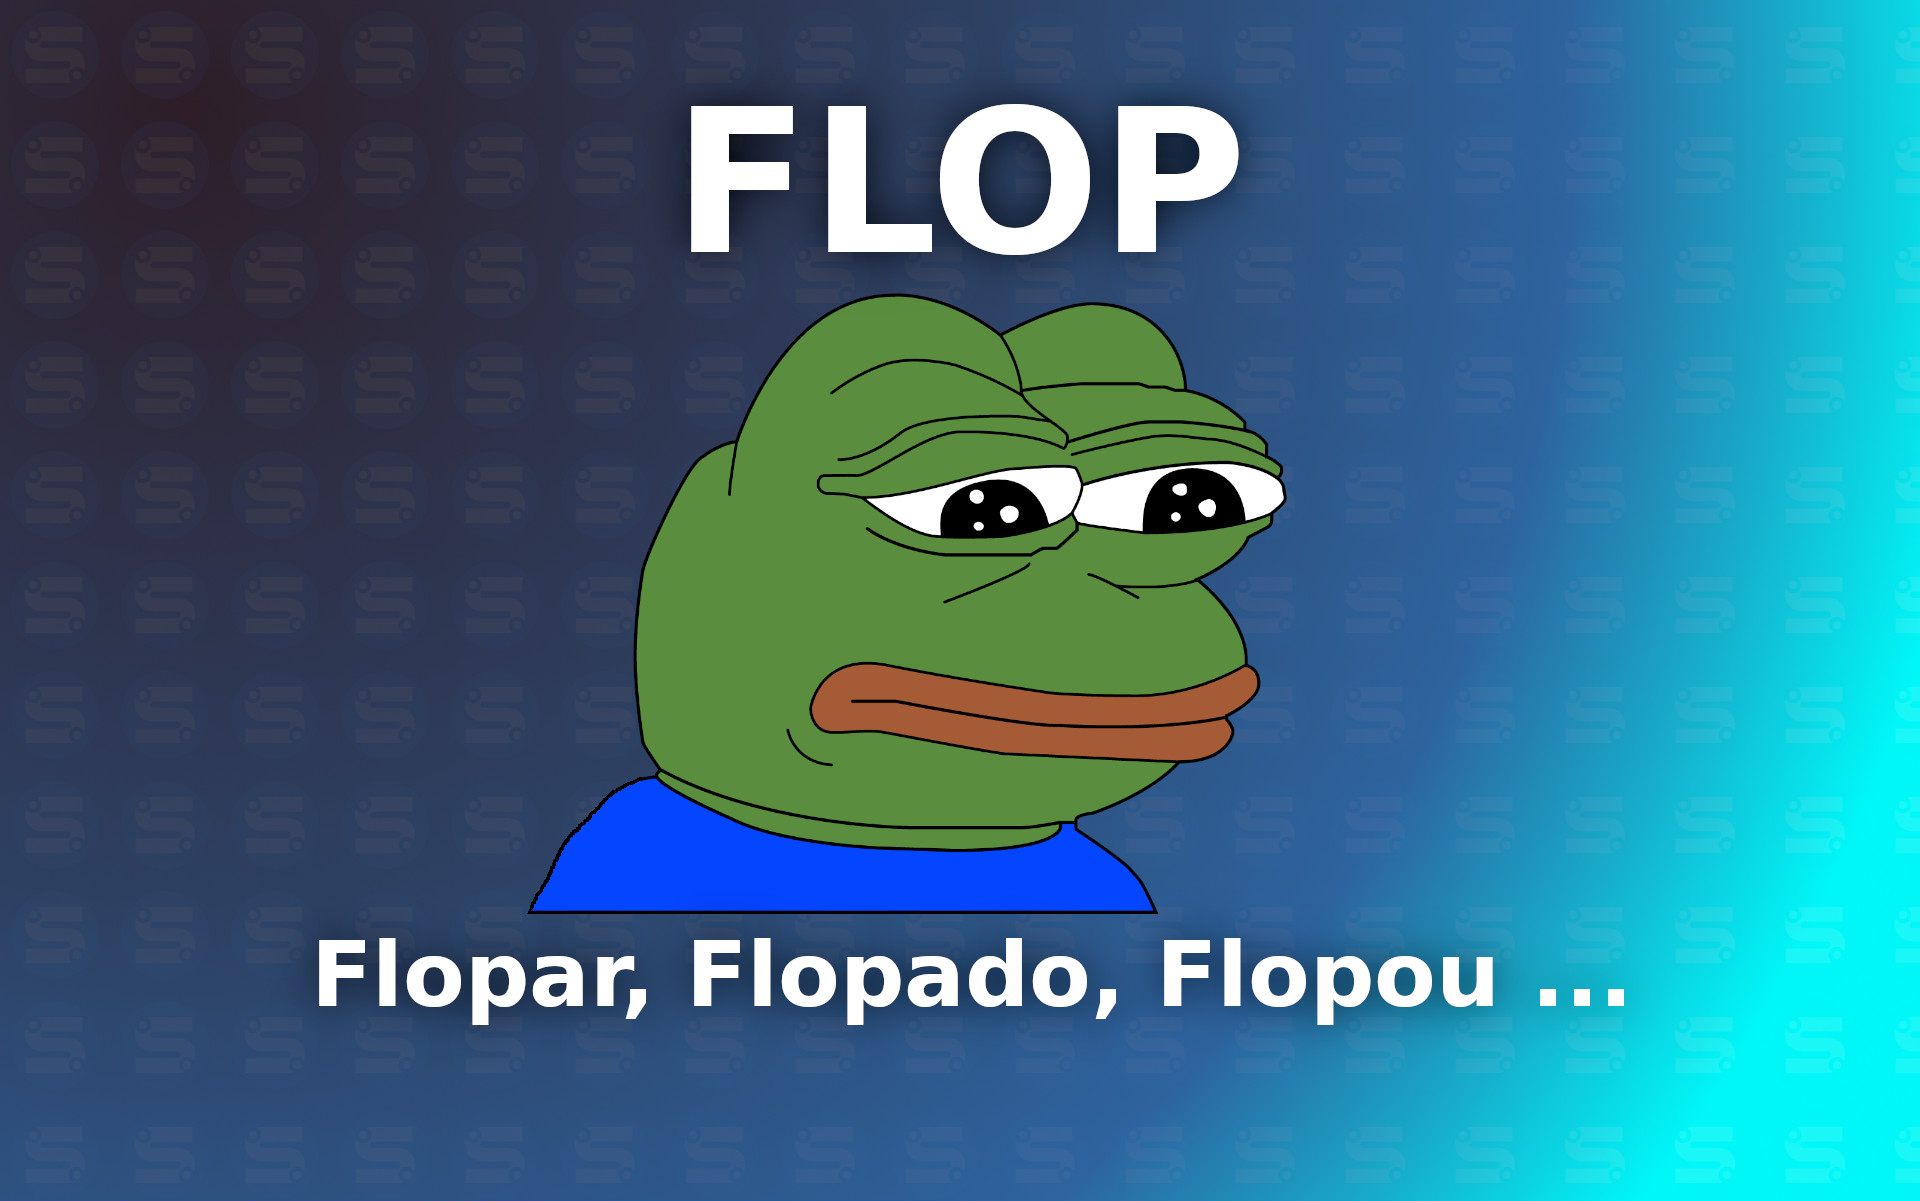 Qual é a Gíria - Conhece a gíria Flopar? 😎 #flopou #flopar 👇 Acesse  nosso site e confira também no Instagram!